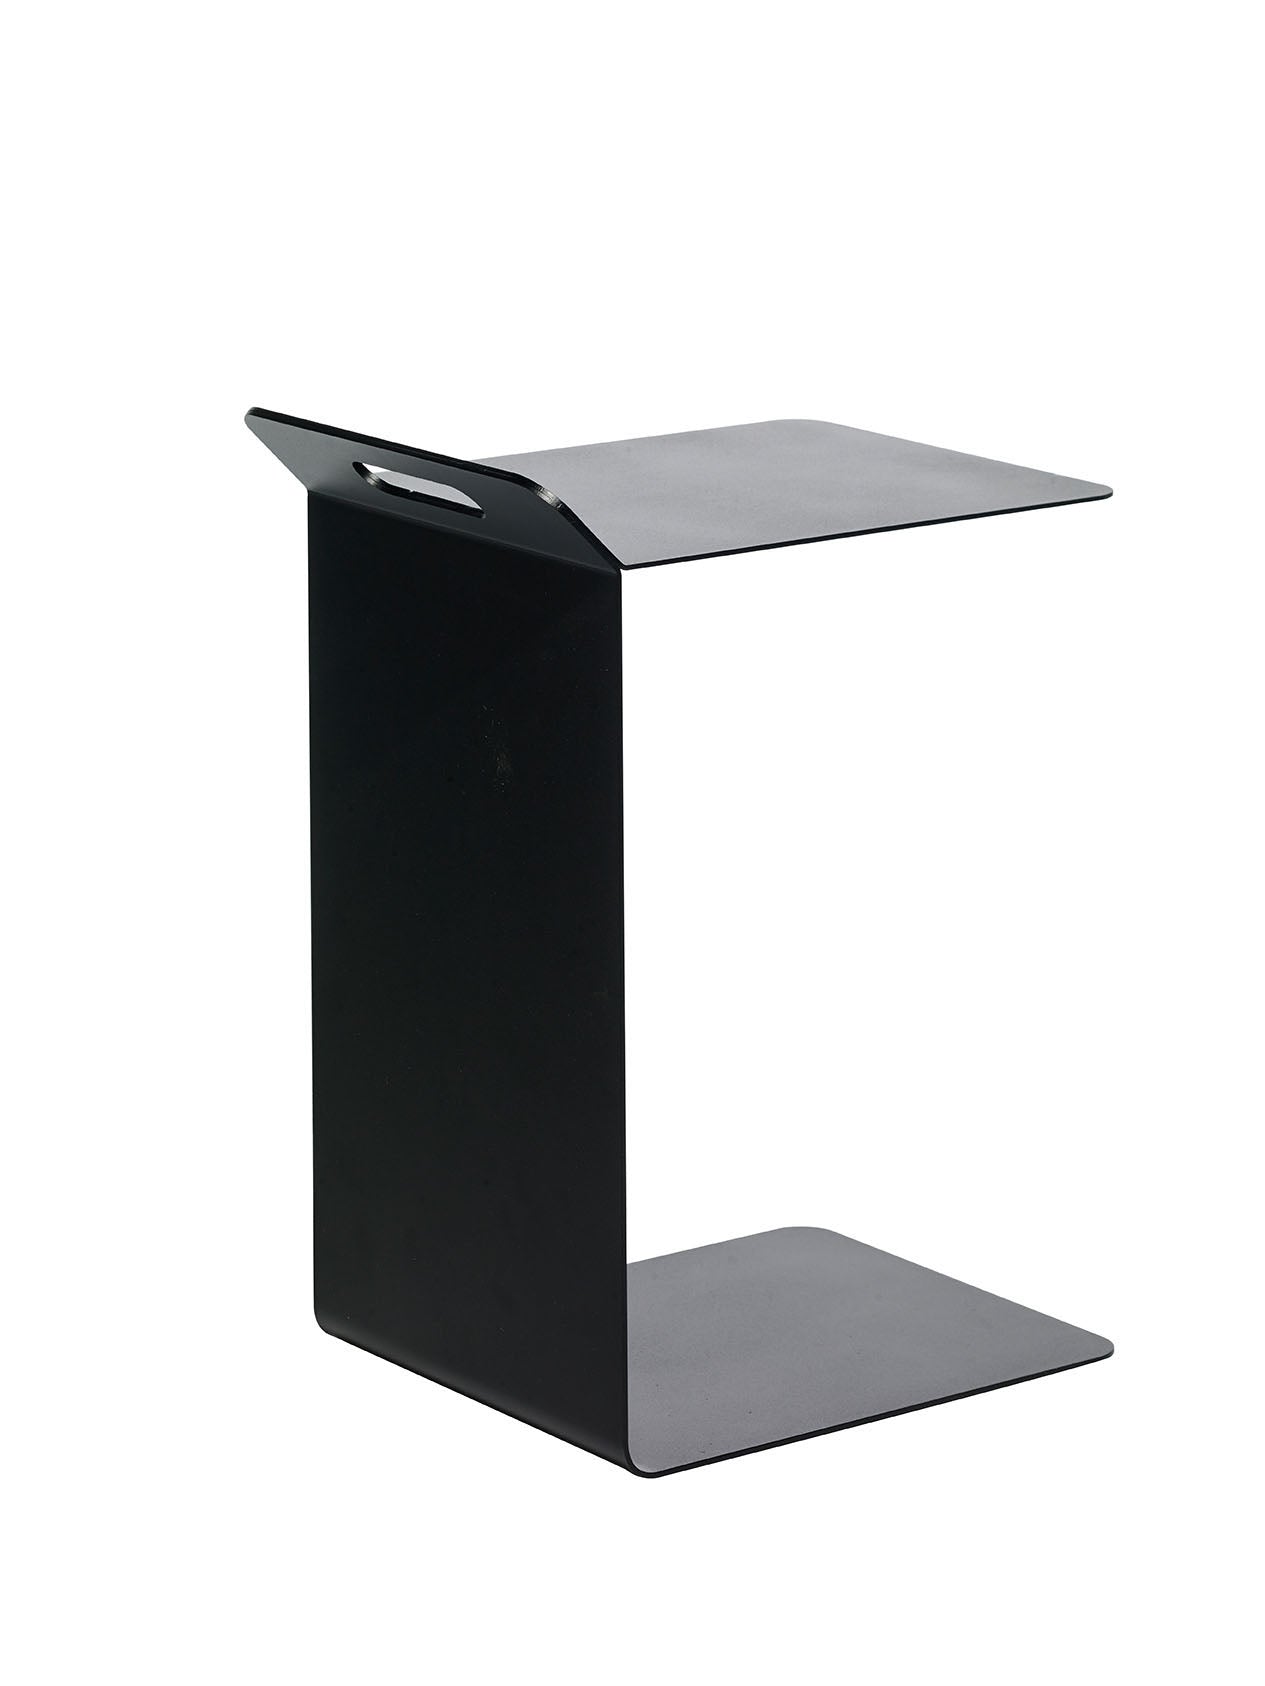 MURANO Beistelltisch in schwarz präsentiert im Onlineshop von KAQTU Design AG. Beistelltisch ist von Pieperconcept